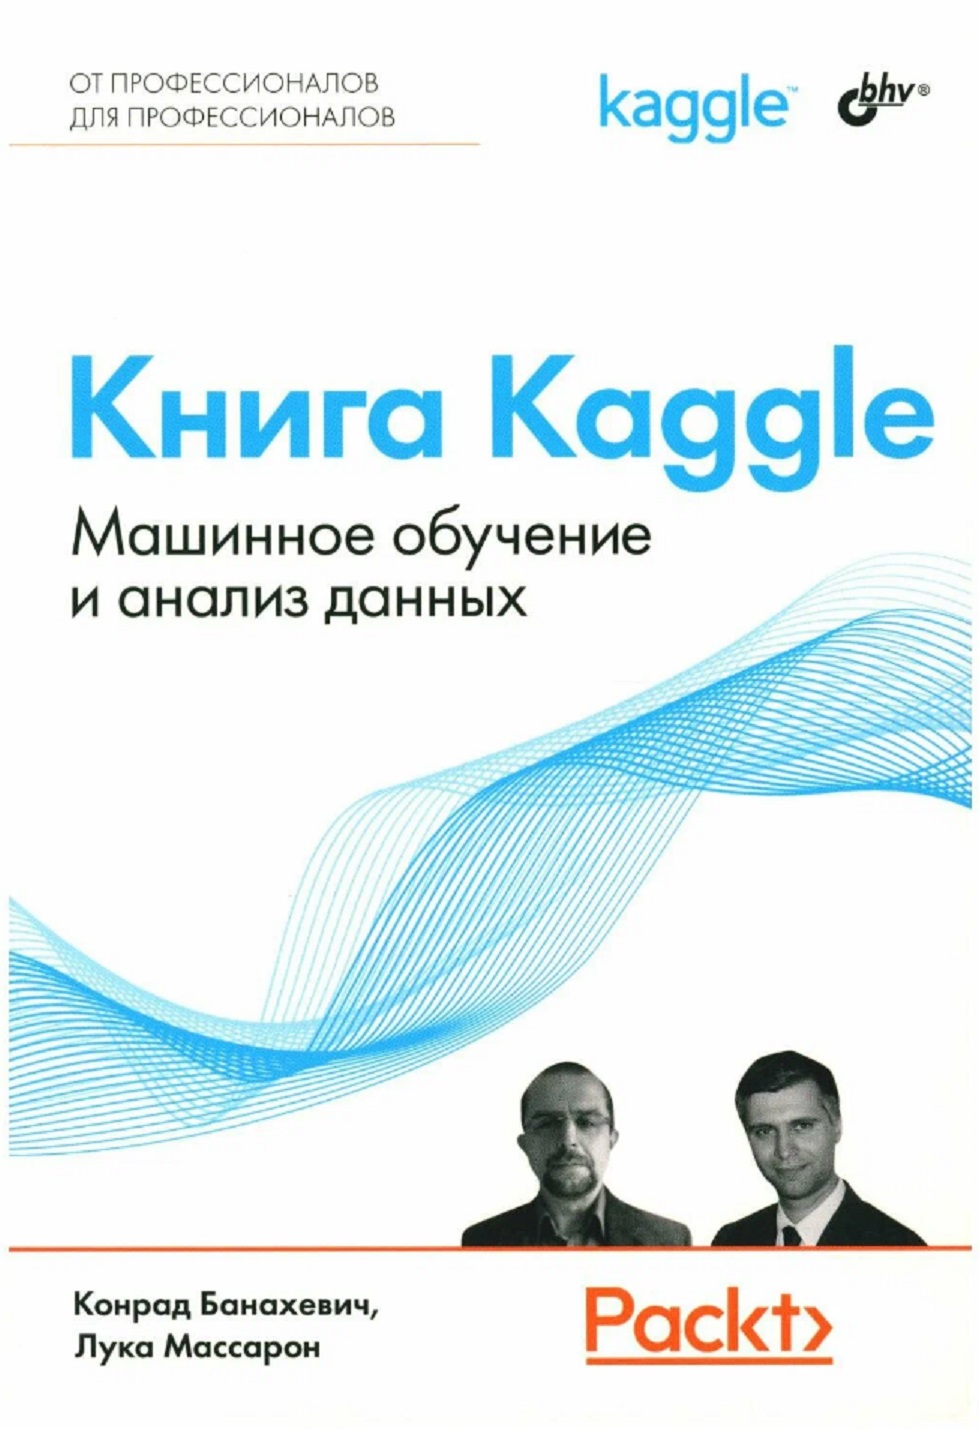 Массарон Лука, Банахевич Конрад - Книга Kaggle. Машинное обучение и анализ данных